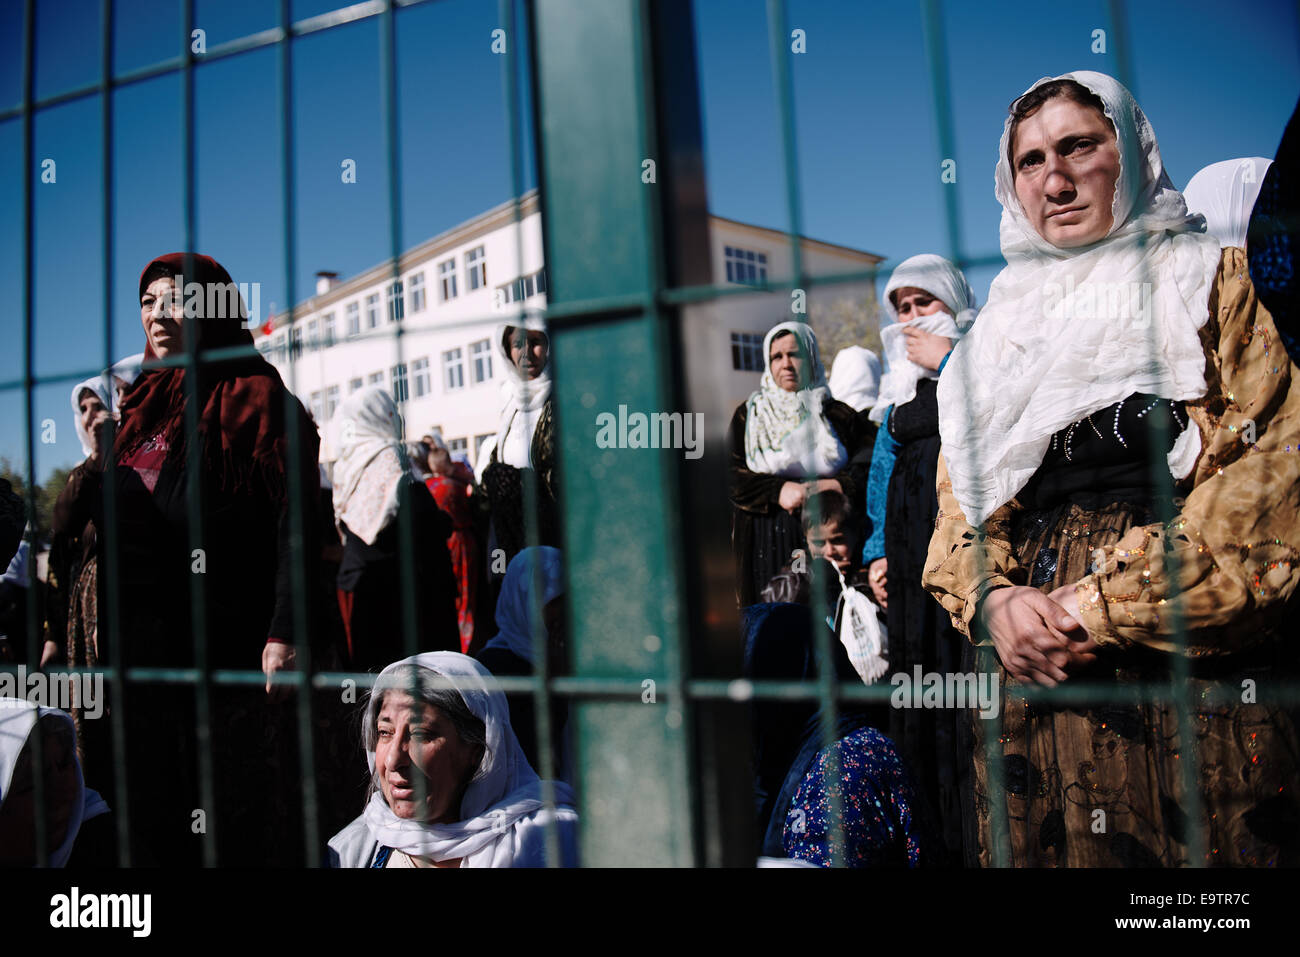 Donne curde assistere al funerale di un uomo curda in Turchia la città di confine di Suruc, Turchia Foto Stock